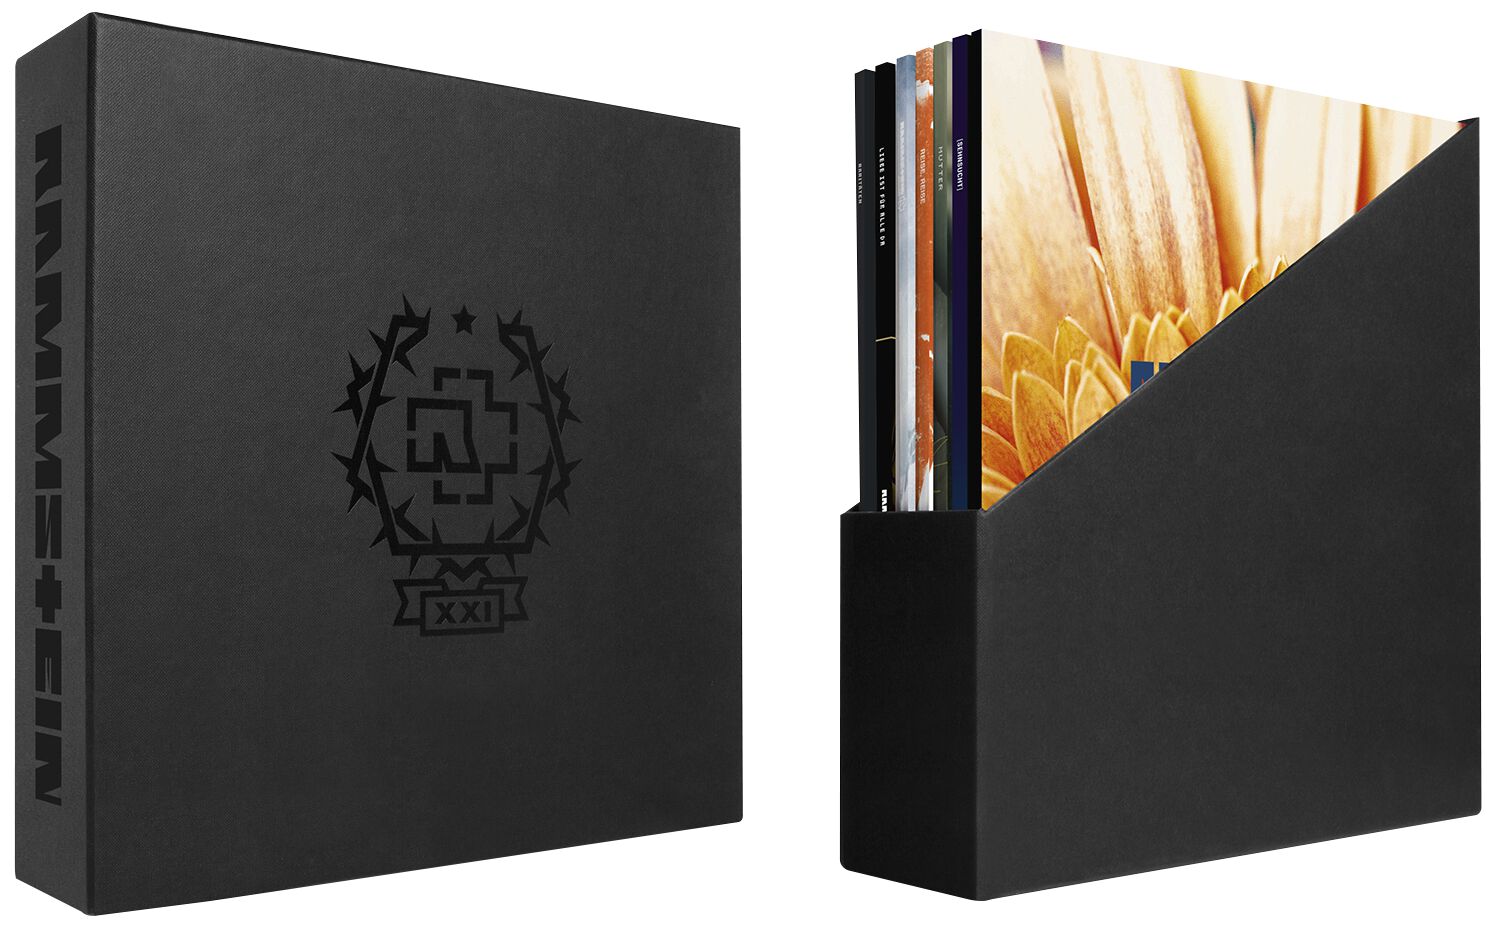 Vinyle découpé Rammstein Déco artisanale et idée cadeau originale